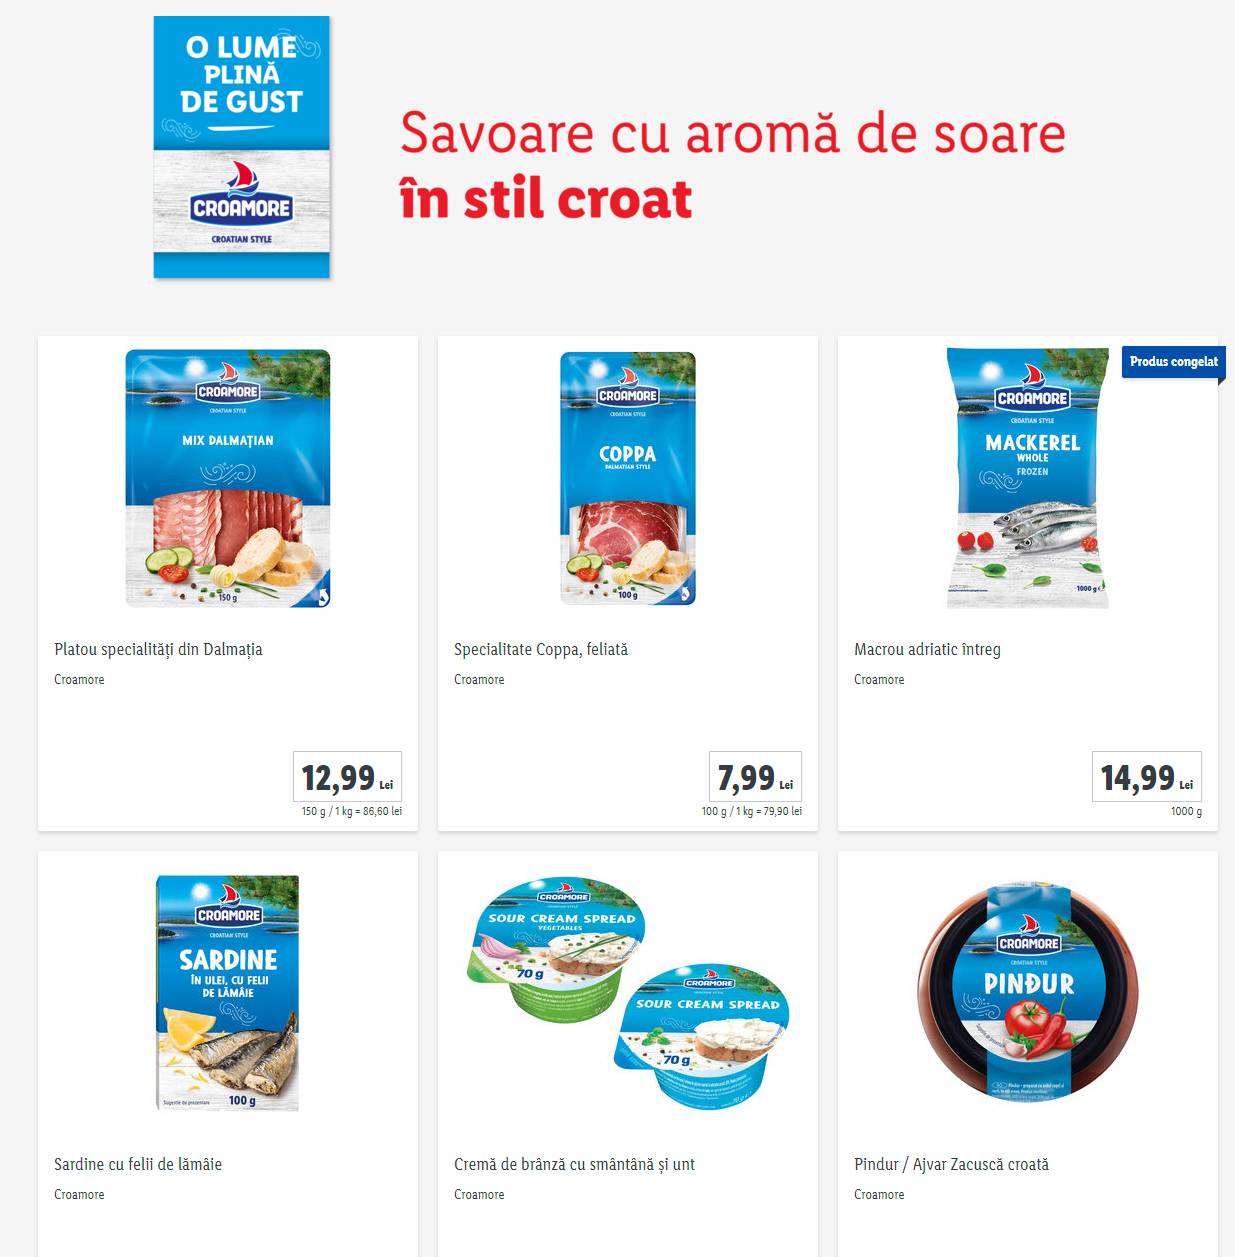 LIDL Roemenië Kroatische producten